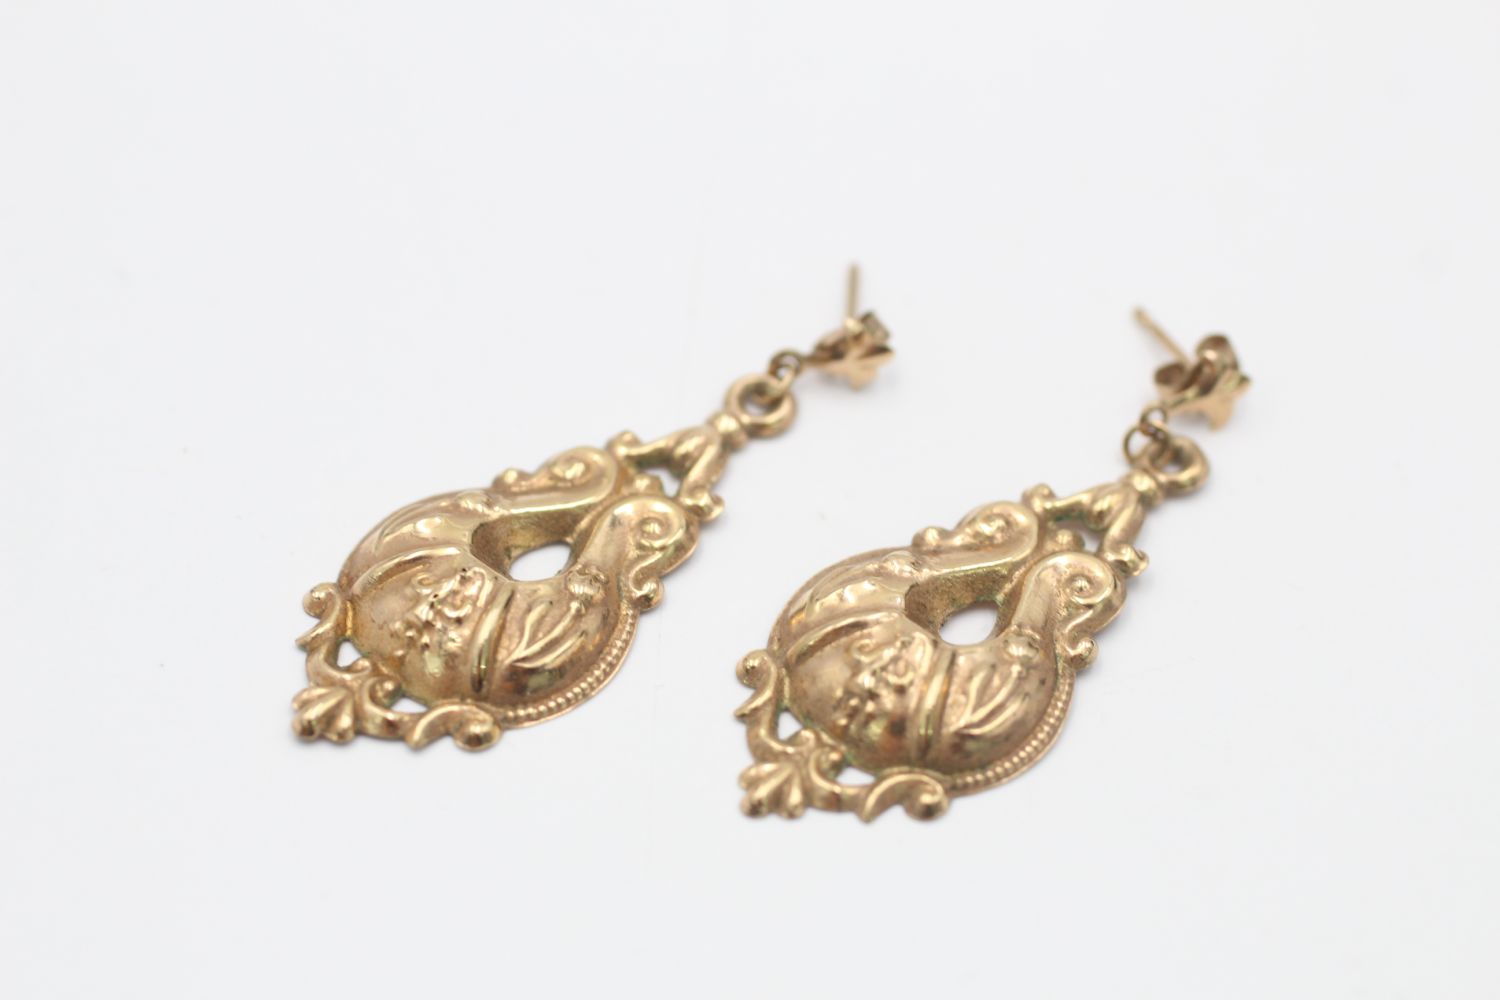 9ct gold vintage ornate openwork drop earrings (1.1g)